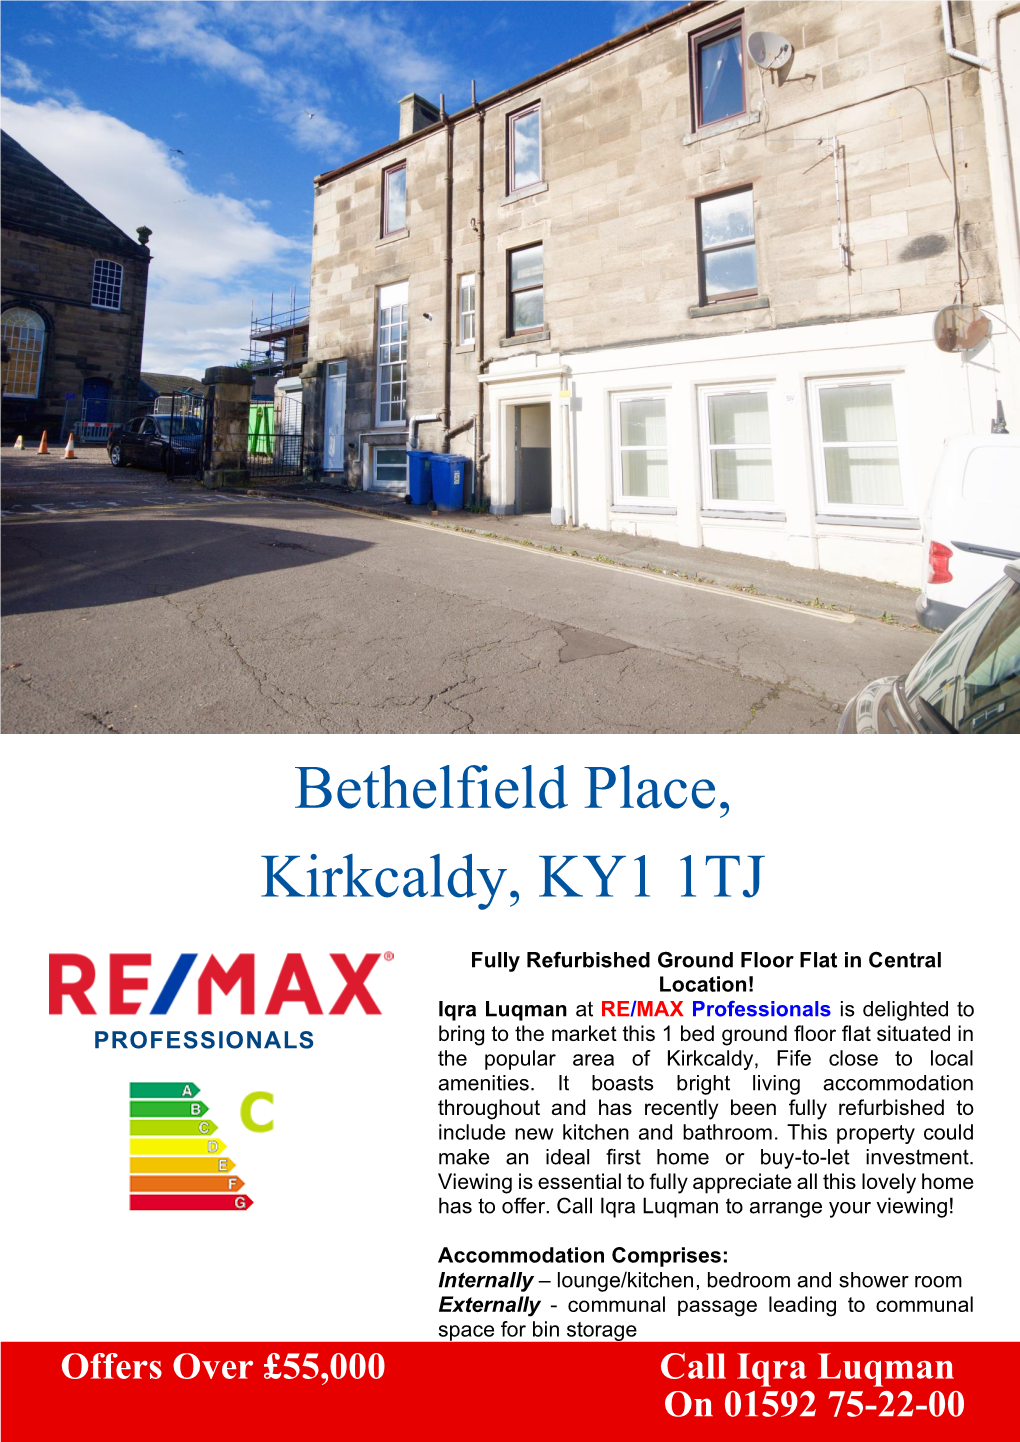 Bethelfield Place, Kirkcaldy, KY1 1TJ